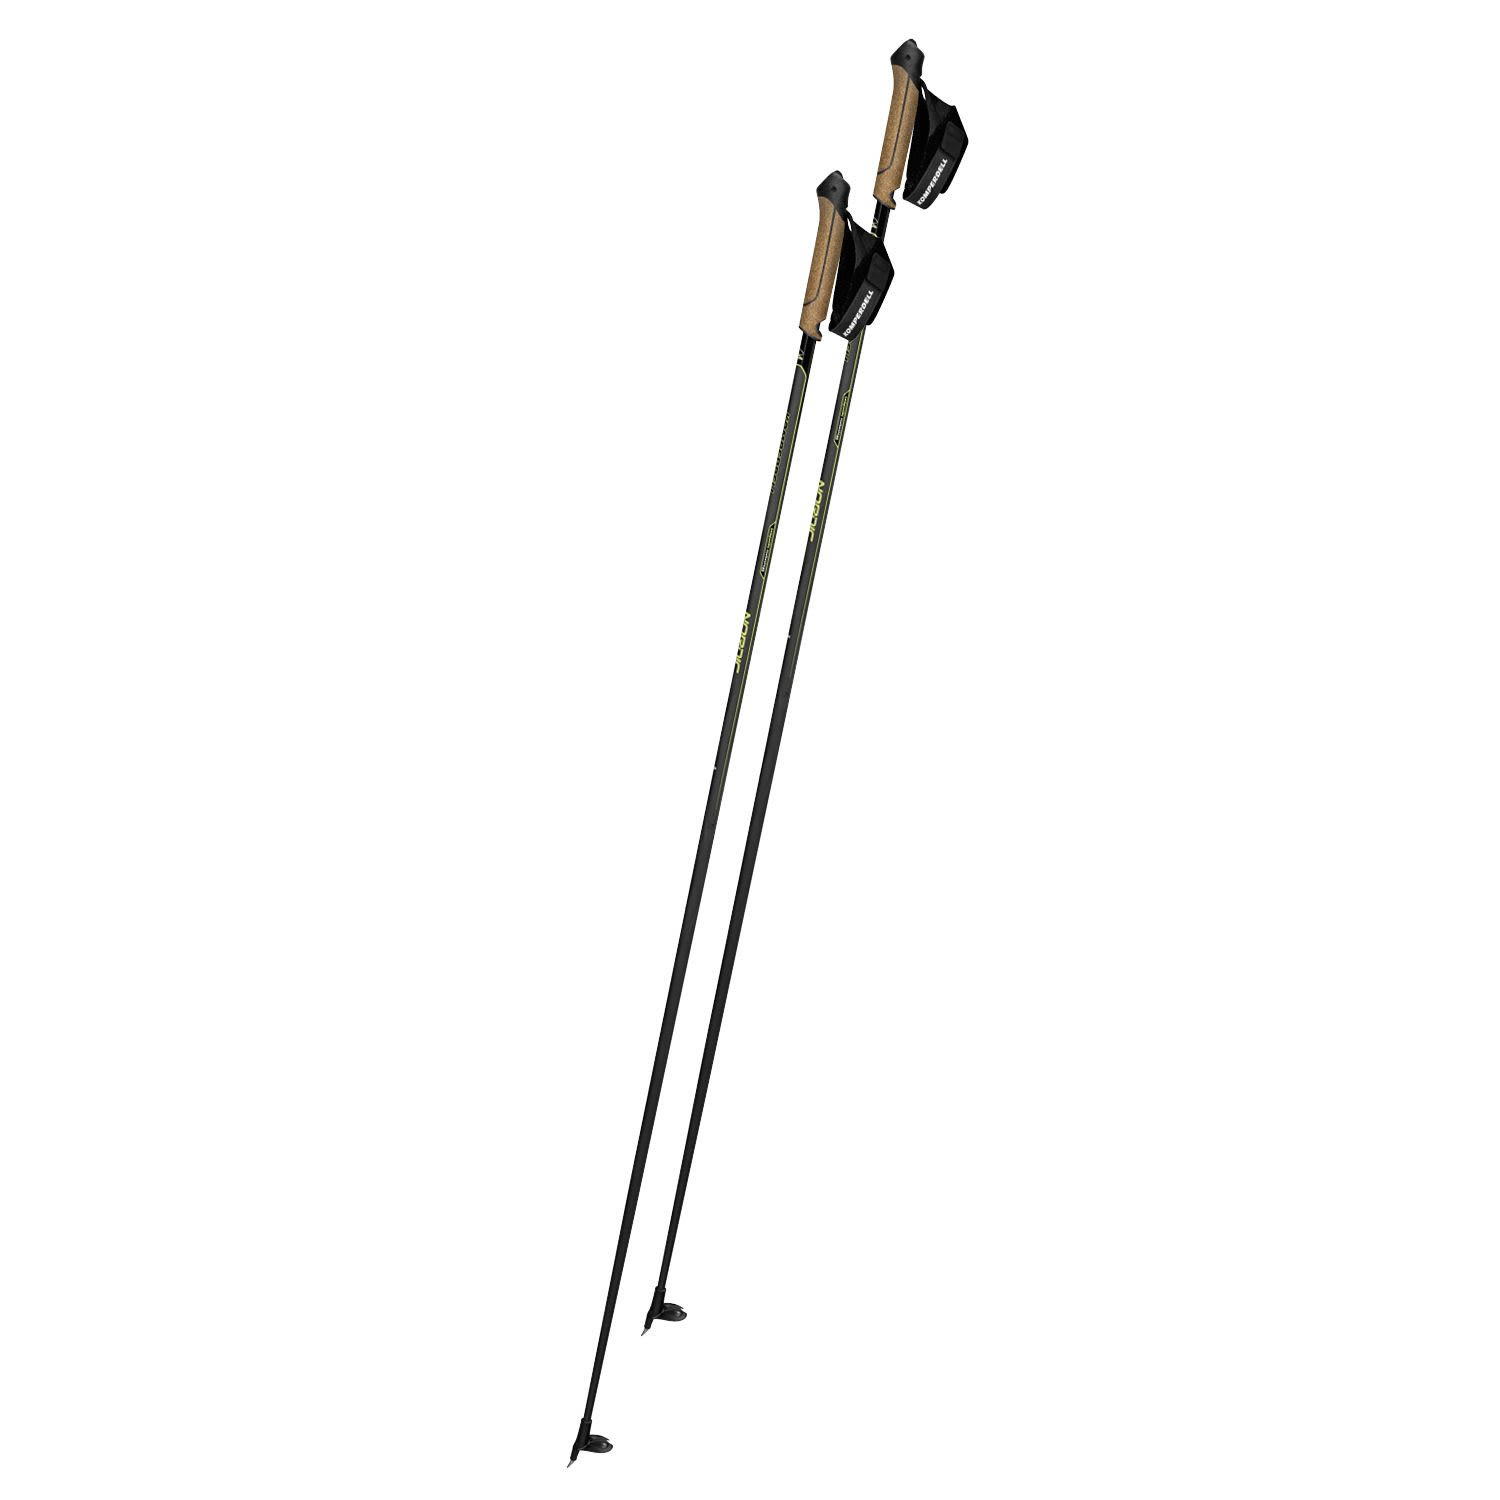 Komperdell Nordic Cx-100 Cork Gelb / Schwarz | Größe 165 cm |  Langlaufstock